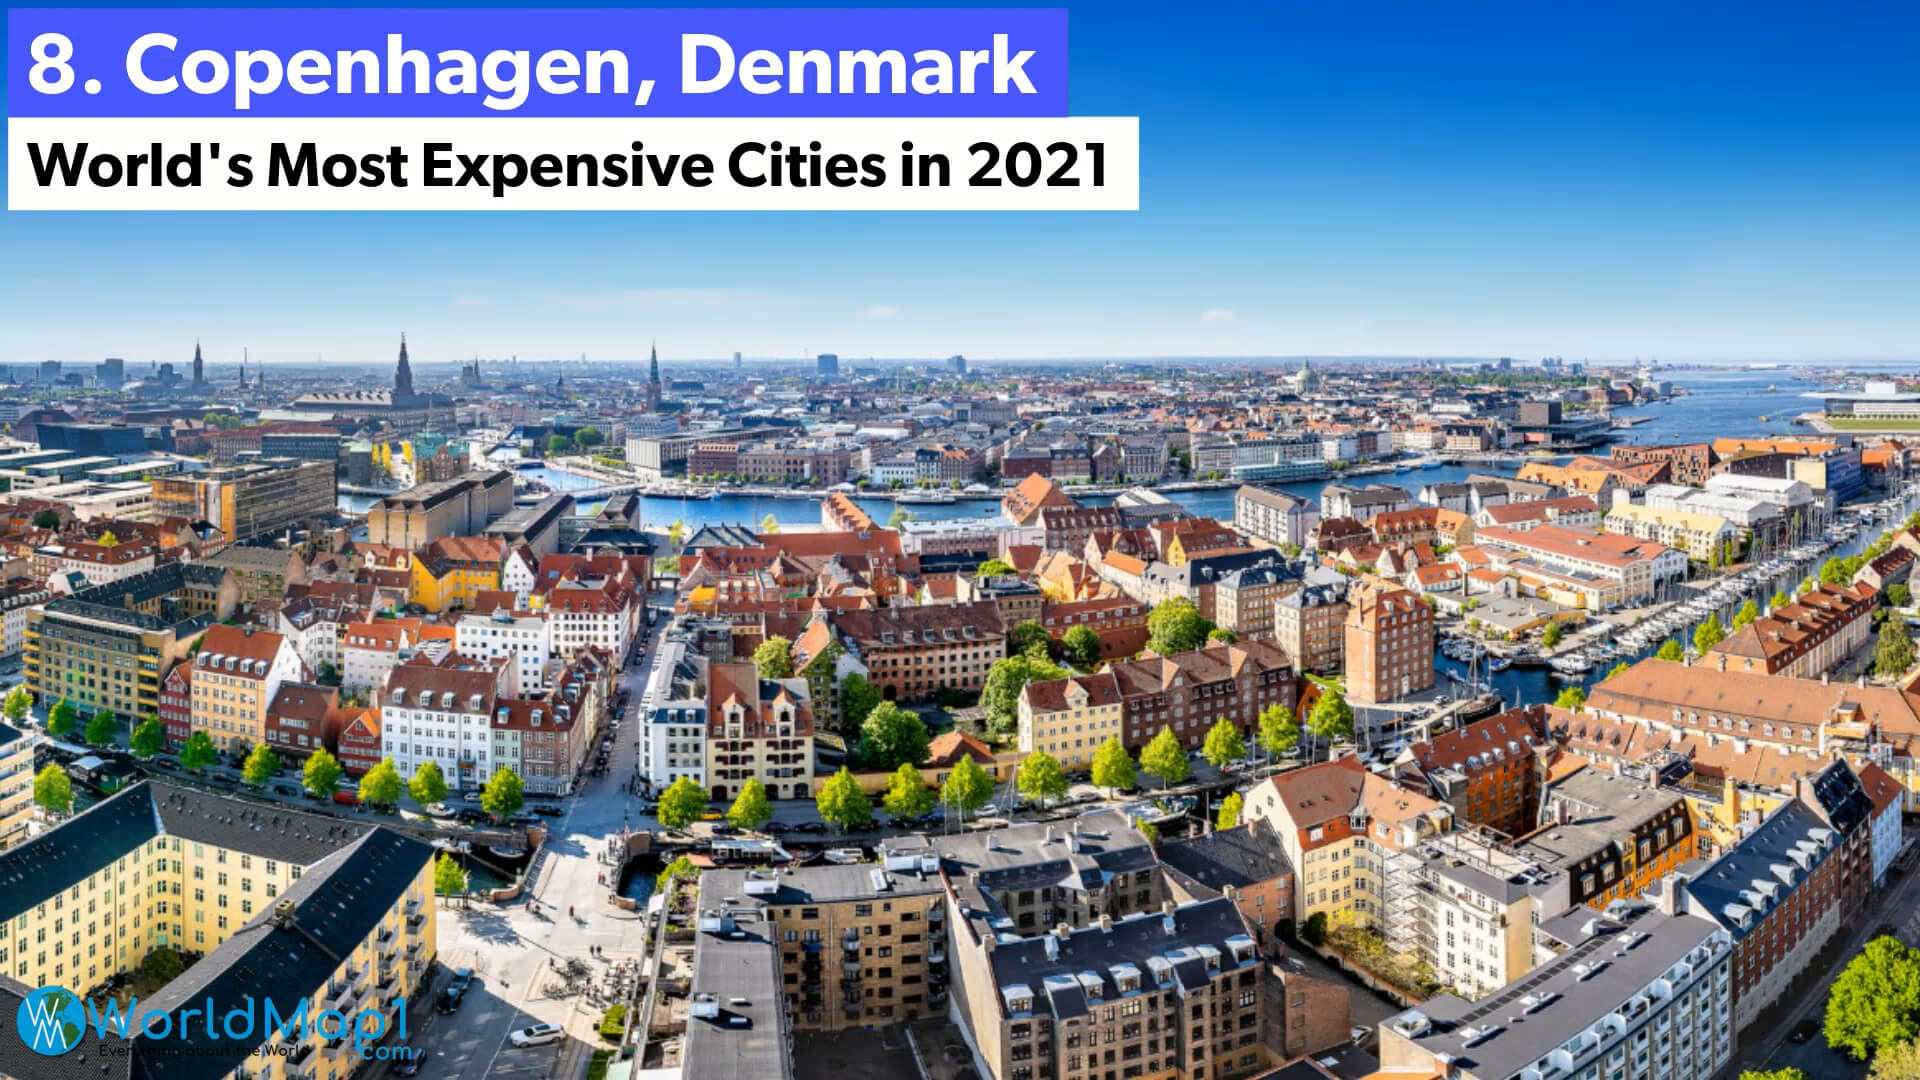 World's Most Expensive Cities - Copenhagen, Denmark